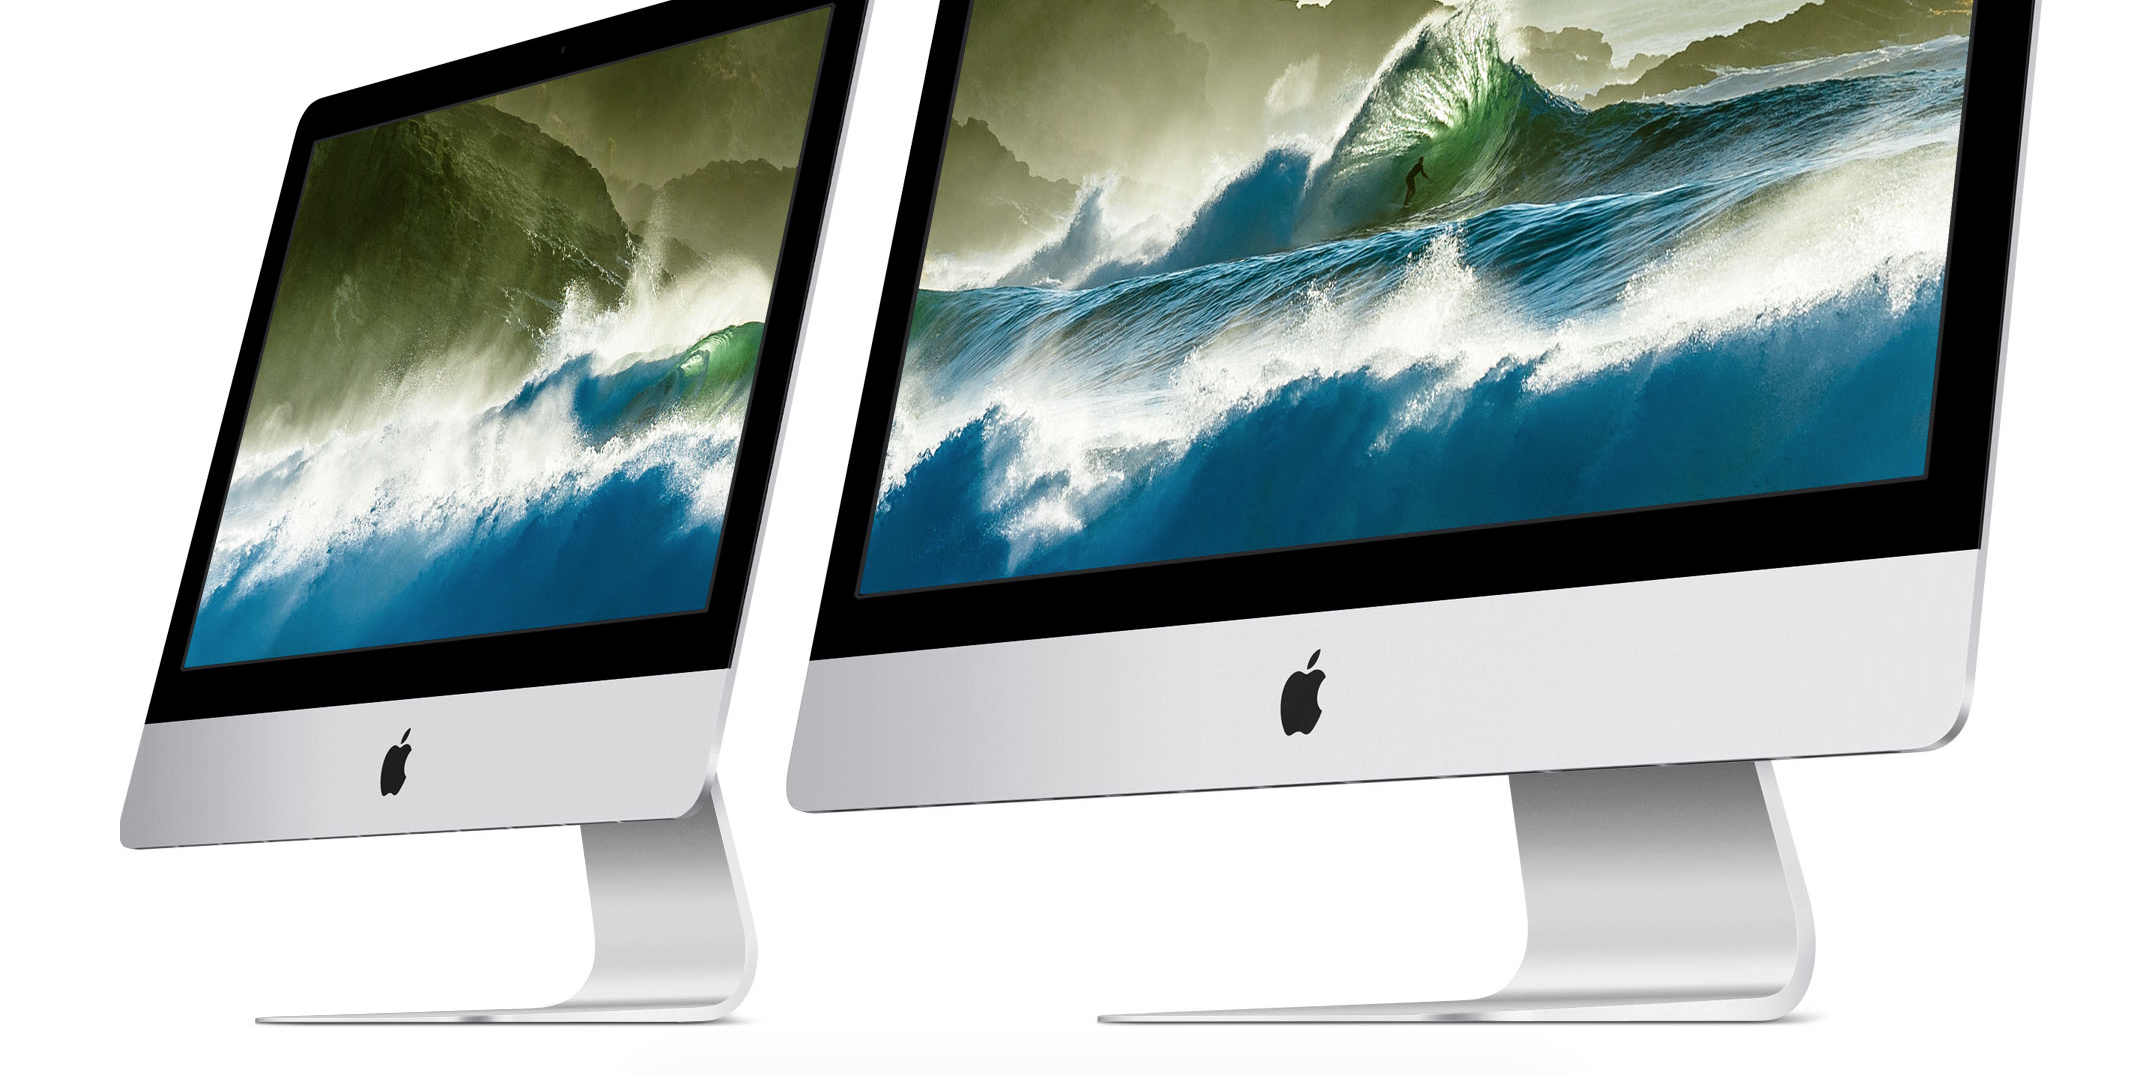 Apple har oppgradert iMac-modellene sine, og lansert en 21,5"-modell med 4K-panel.